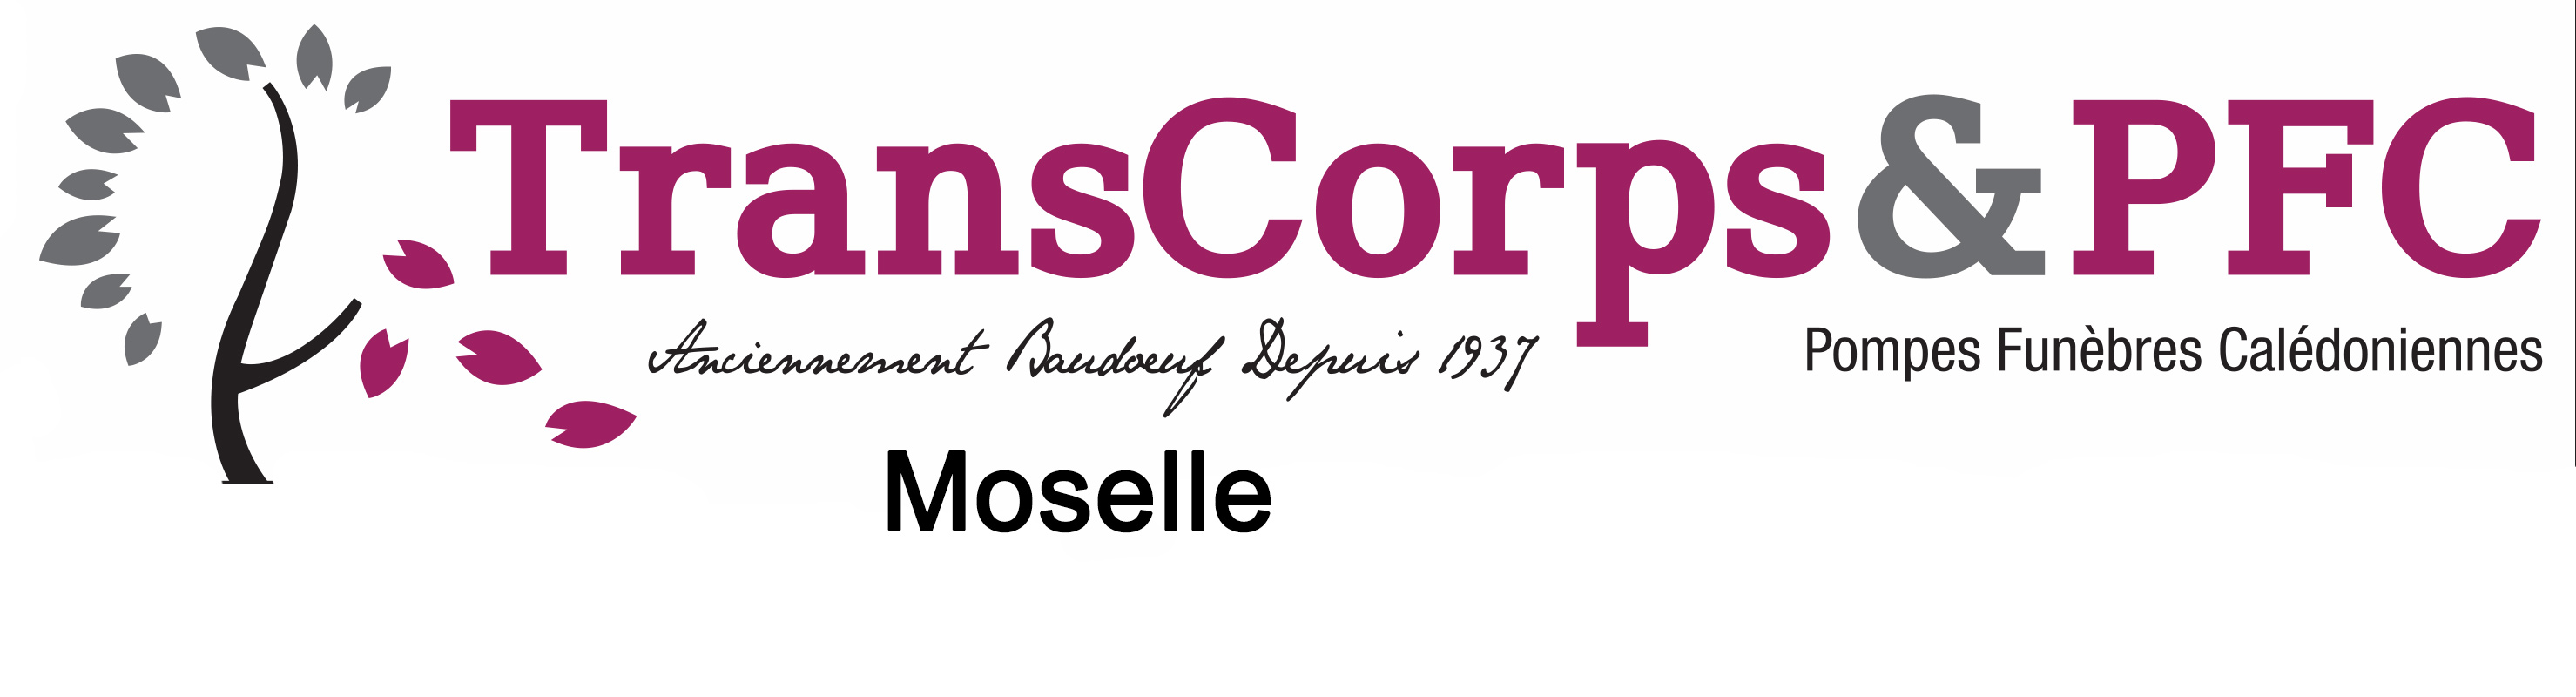 logo de PFC Transcorps Moselle